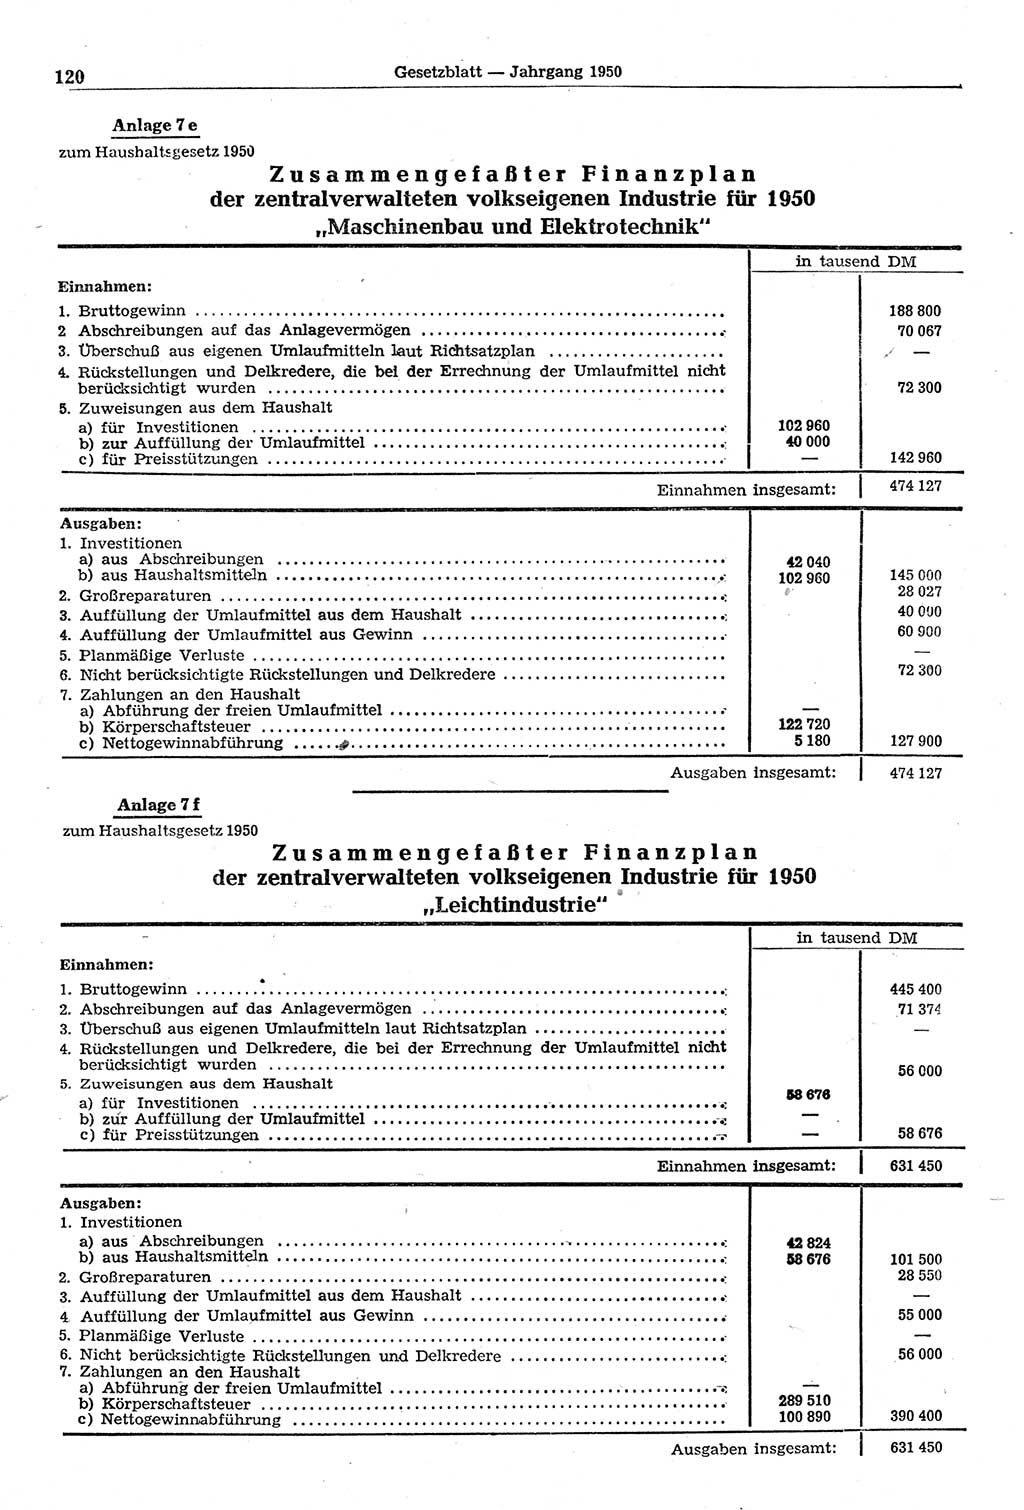 Gesetzblatt (GBl.) der Deutschen Demokratischen Republik (DDR) 1950, Seite 120 (GBl. DDR 1950, S. 120)